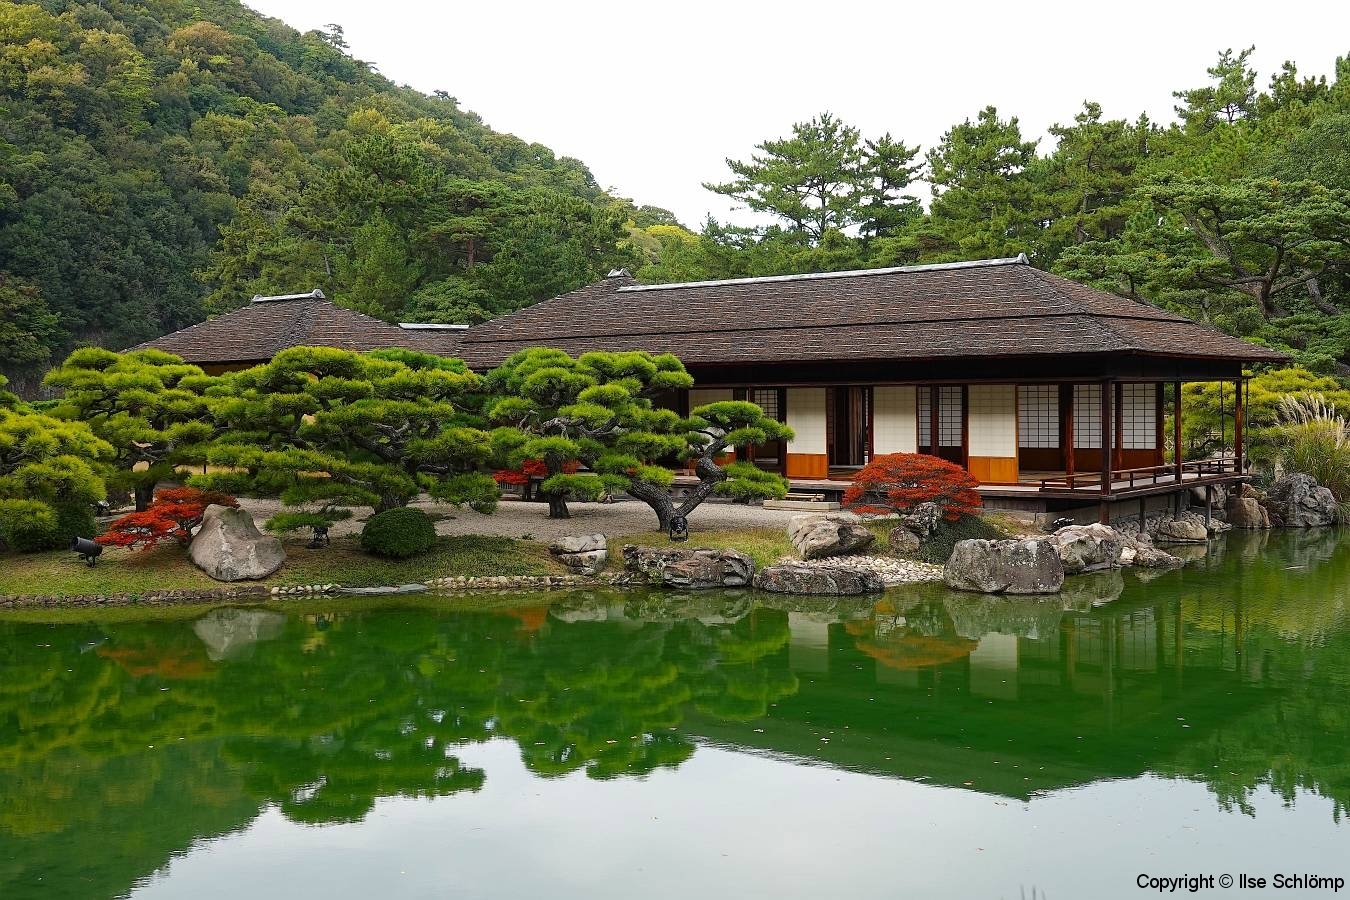 Japan, Takamatsu, Ritsurin-Koen Wandelgarten, Kikugetsu-Pavillon